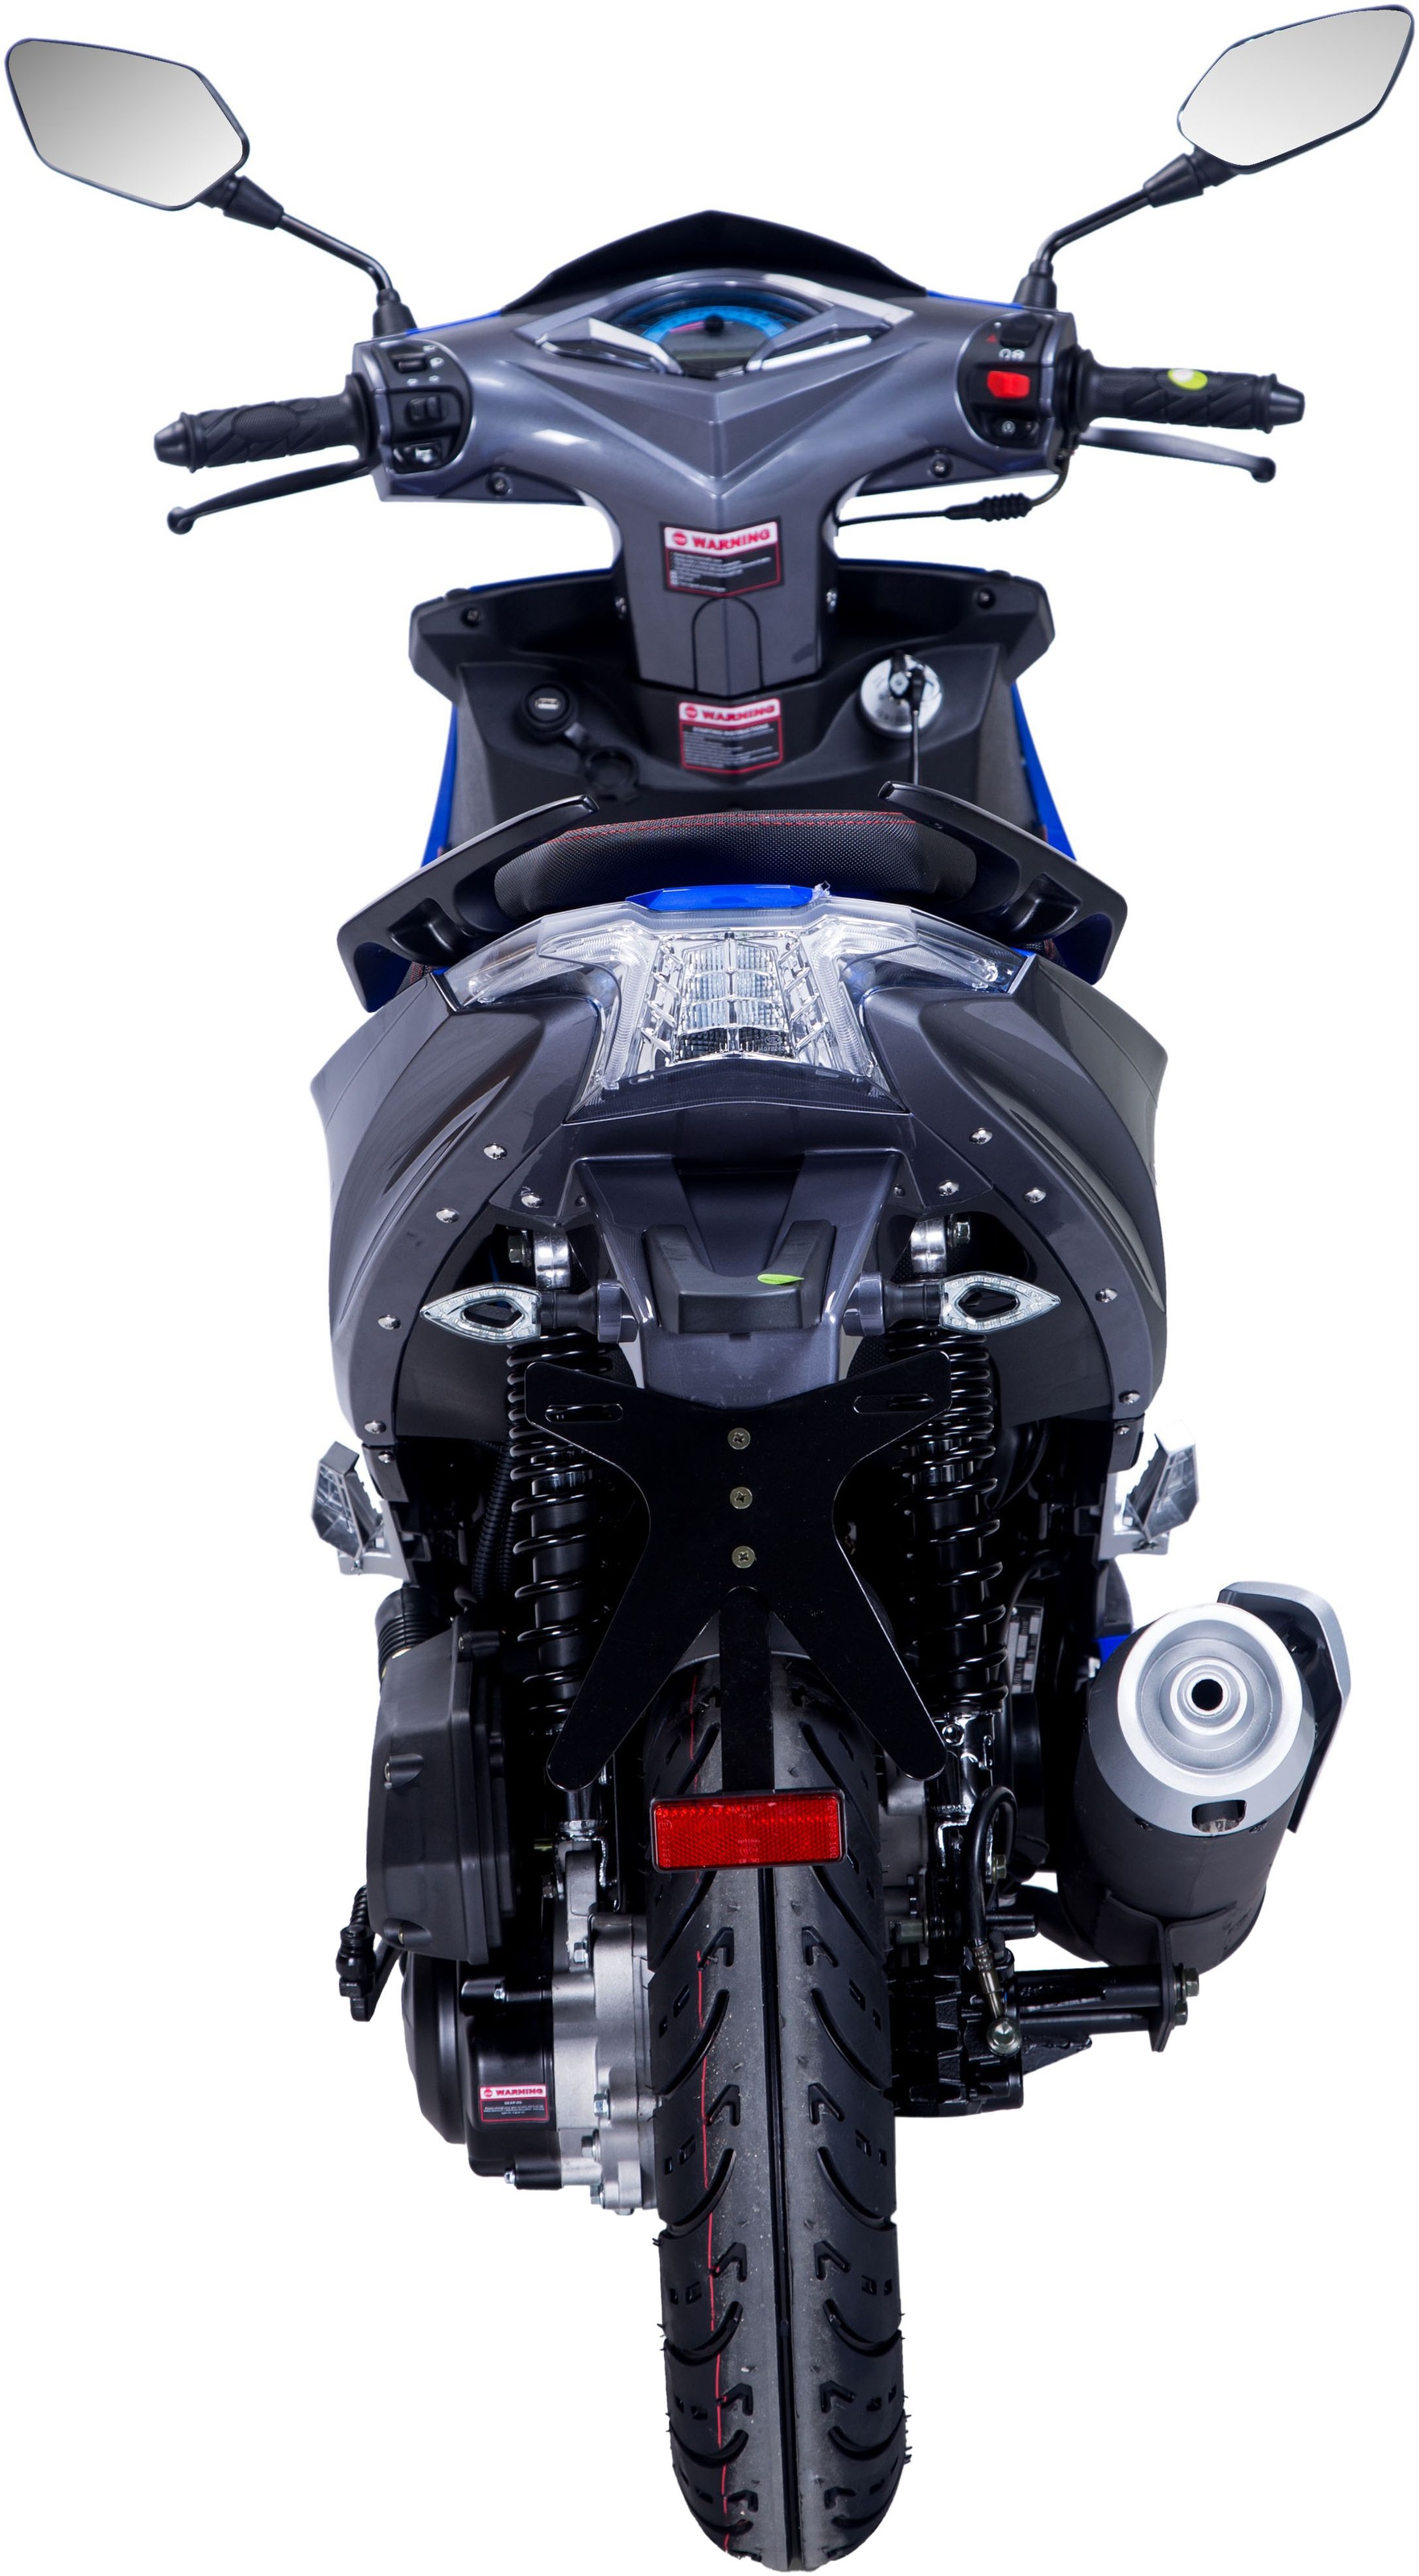 GT UNION Mofaroller »Striker«, 50 cm³, 25 km/h, Euro 5, 2,5 PS, mit USB-Anschluss und LED-Vollausstattung, sportliches Design